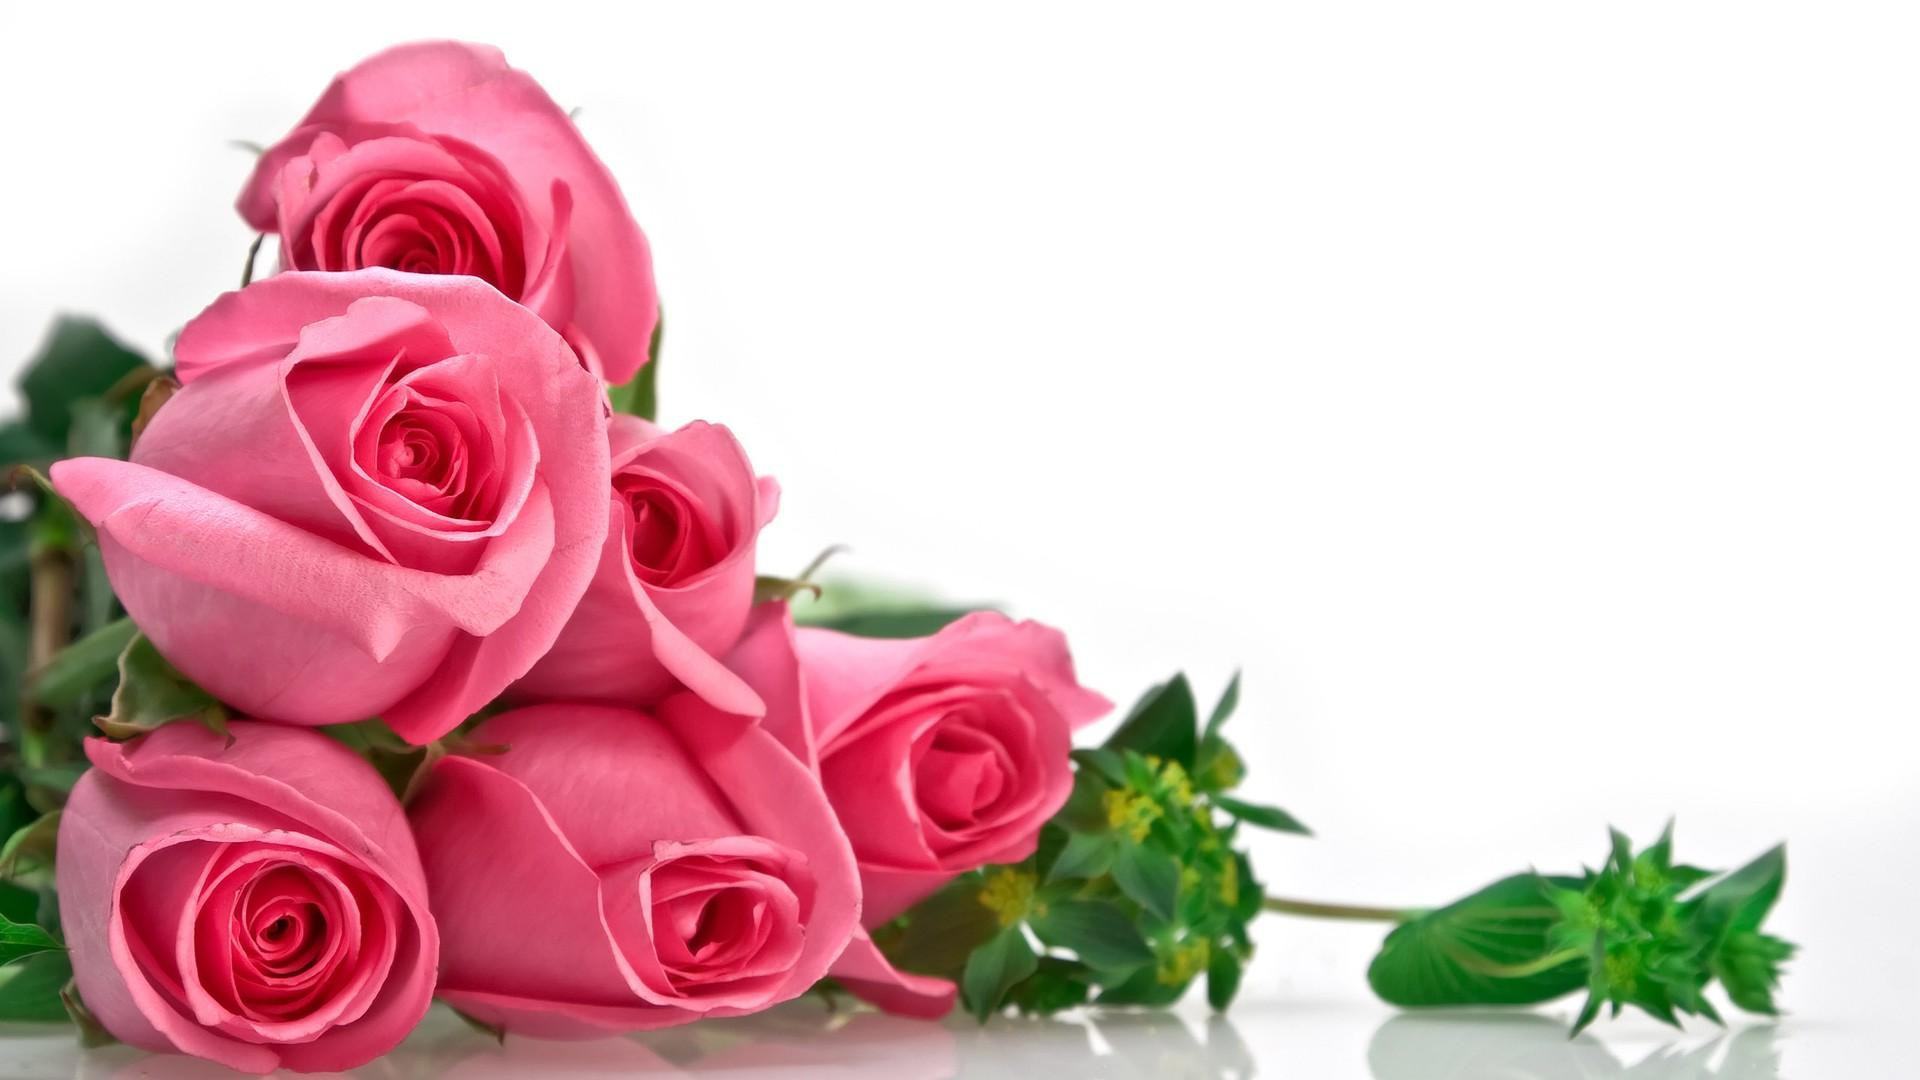 Bạn có biết rằng mỗi loại hoa hồng mang ý nghĩa riêng? Từ hoa hồng đỏ nổi tiếng với tình yêu đến hoa hồng vàng tượng trưng cho thành công và sự phát triển. Chúng tôi đã tạo ra một bộ sưu tập các loài hoa hồng và giải thích ý nghĩa của chúng cho bạn. Hãy xem và tìm hiểu thêm về thế giới của hoa hồng!